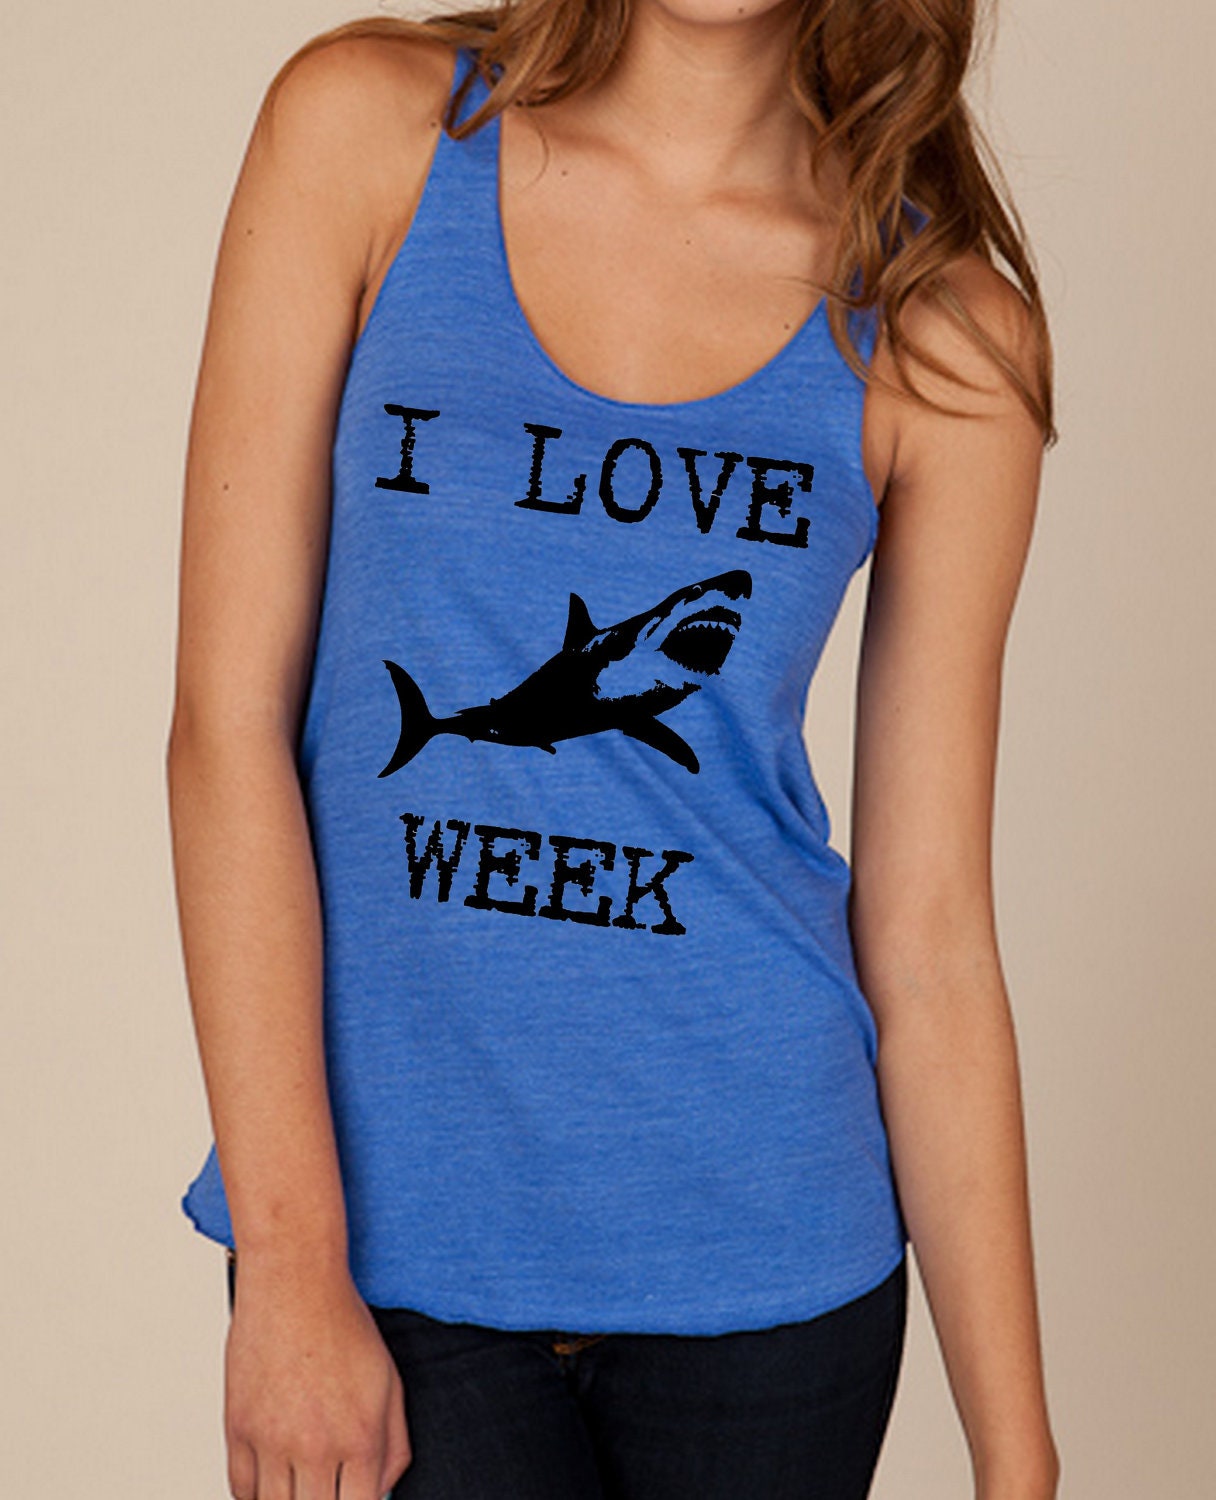 I LOVE SHARK week Girls Ladies Heathered Tank Top Shirt silkscreen screenprint Alternative Apparel - LIttleAtoms